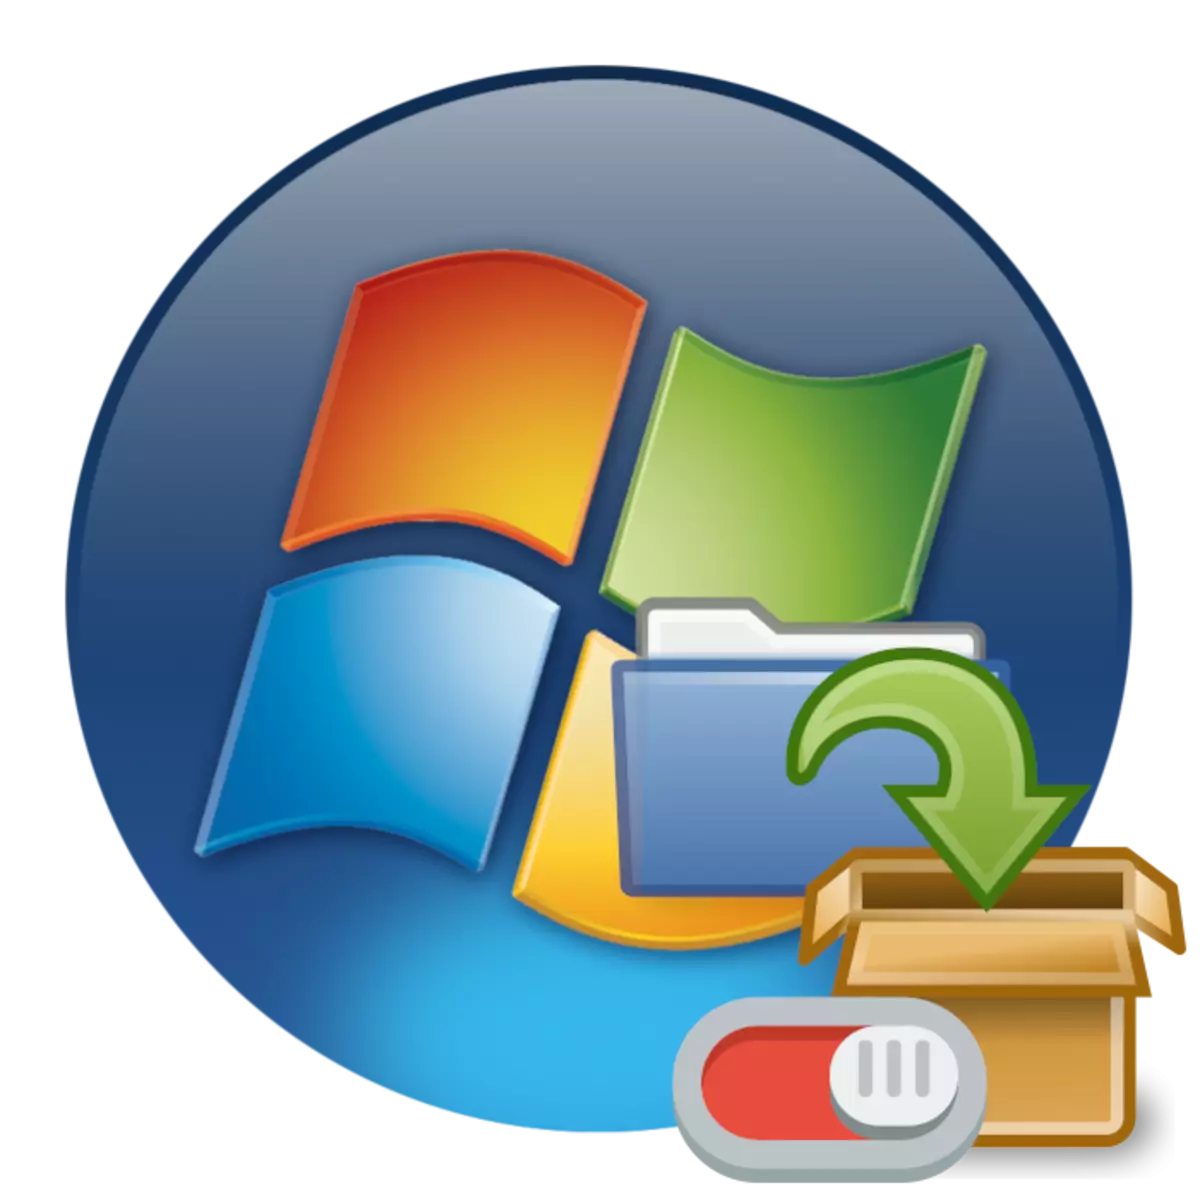 ለዘላለም በ Windows 7 ውስጥ ከምዝገባ ለማሰናከል እንዴት